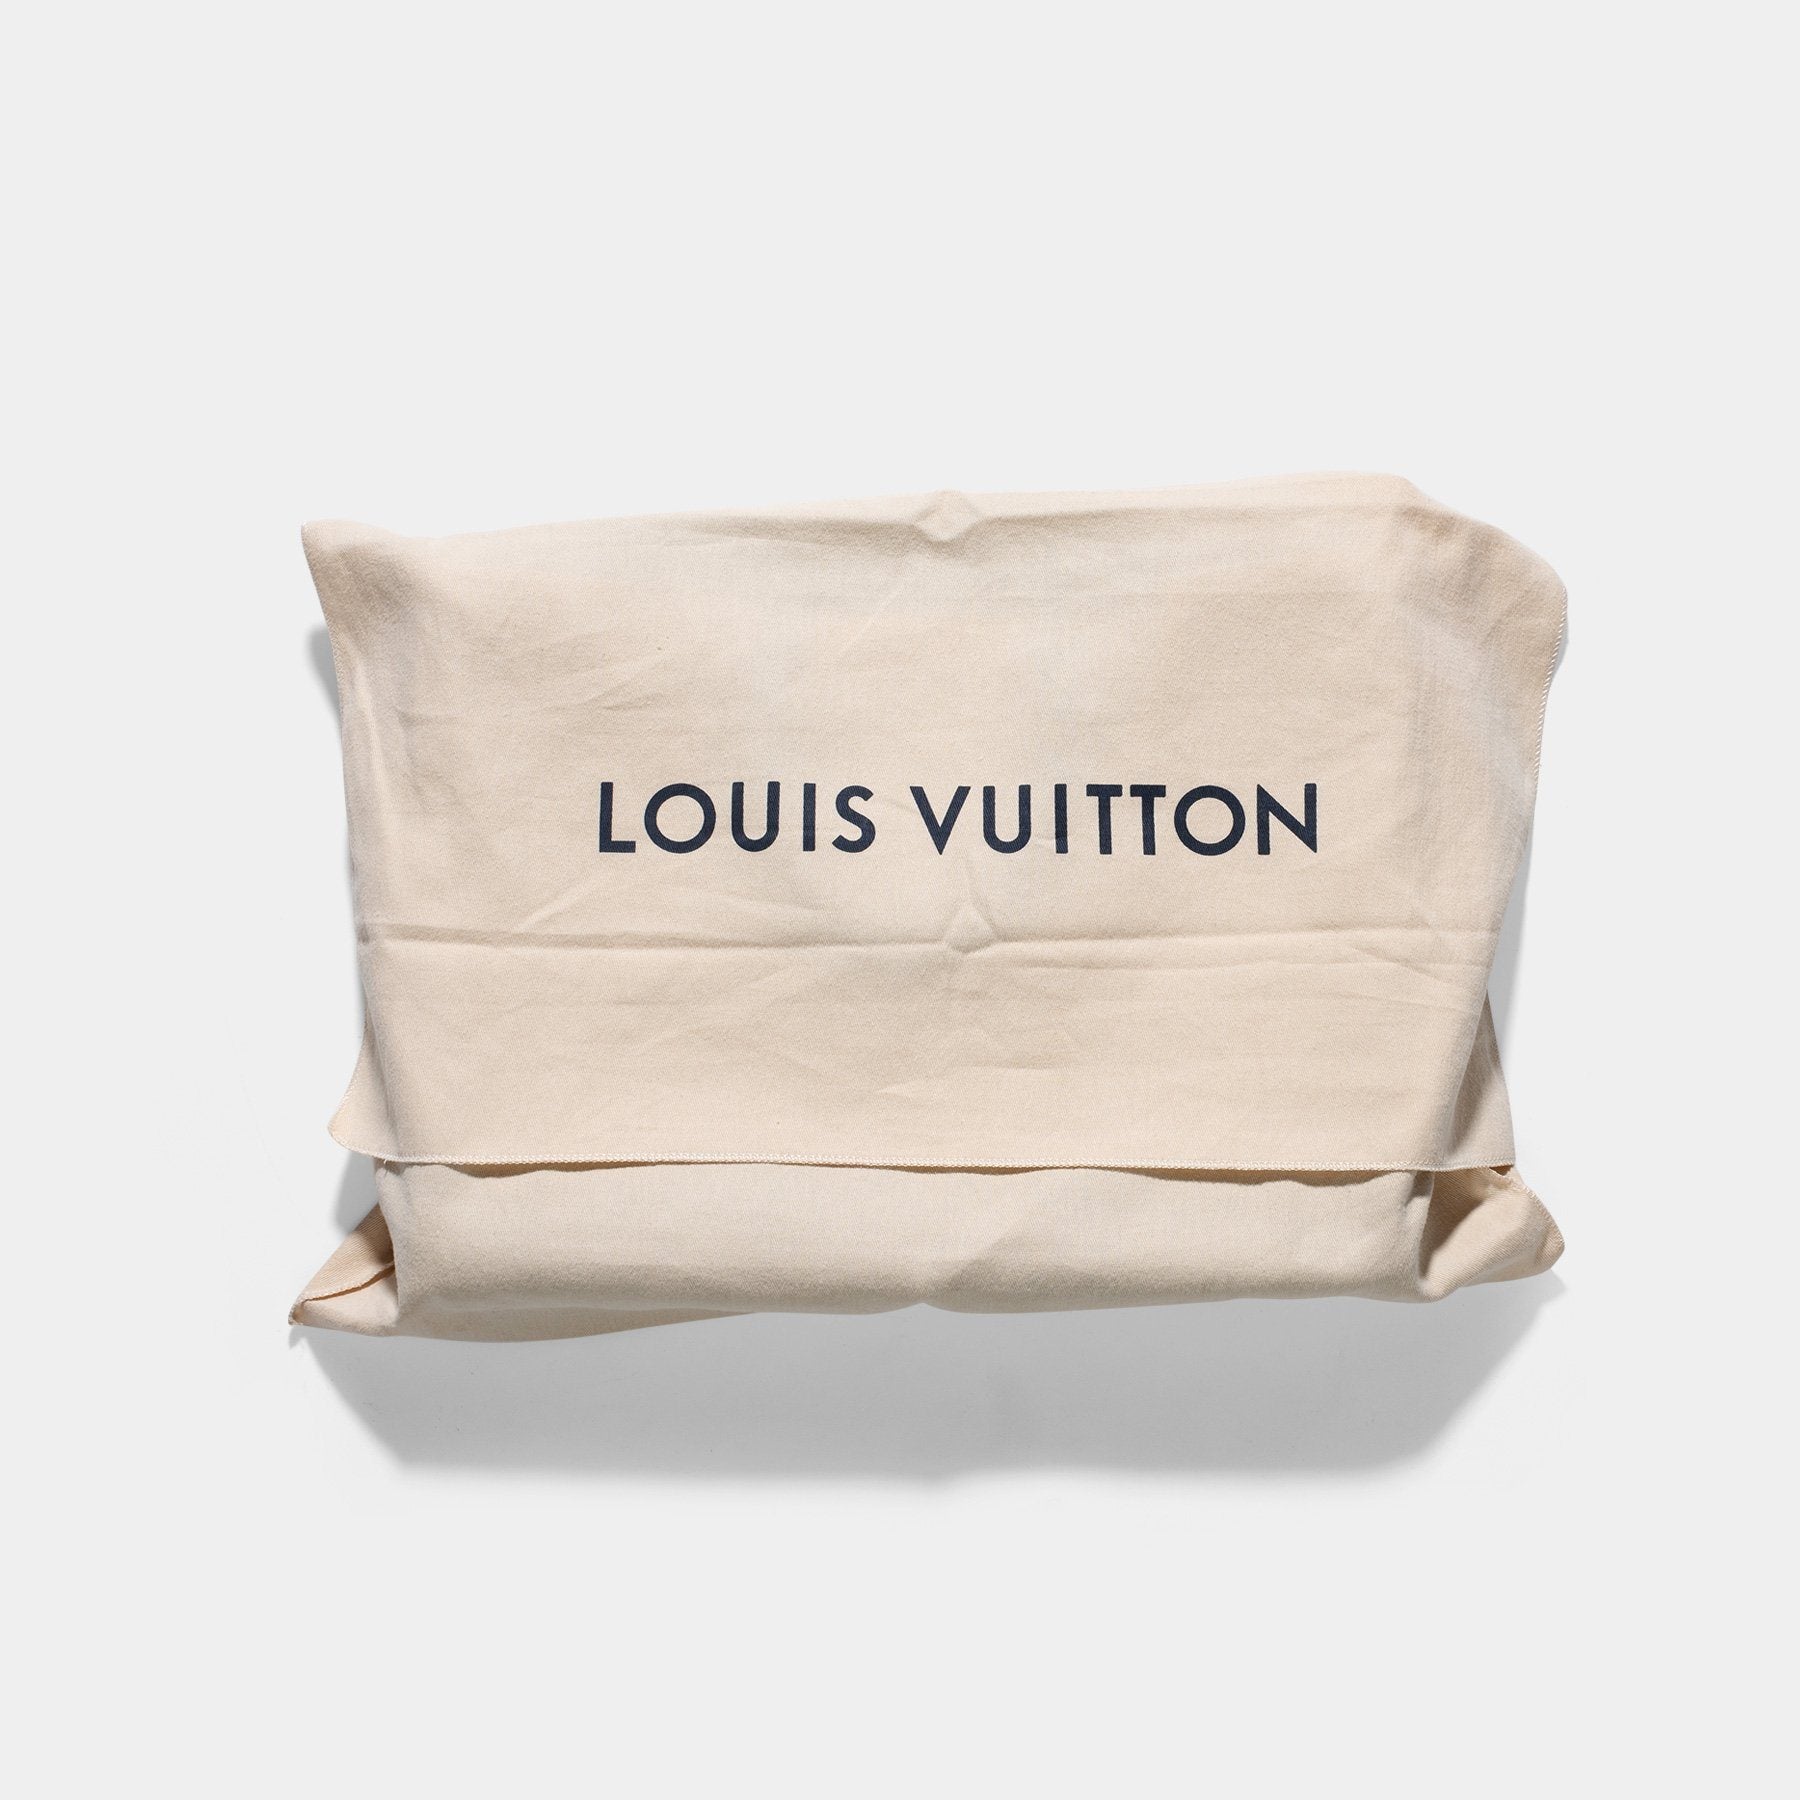 LOUIS VUITTON dustbag